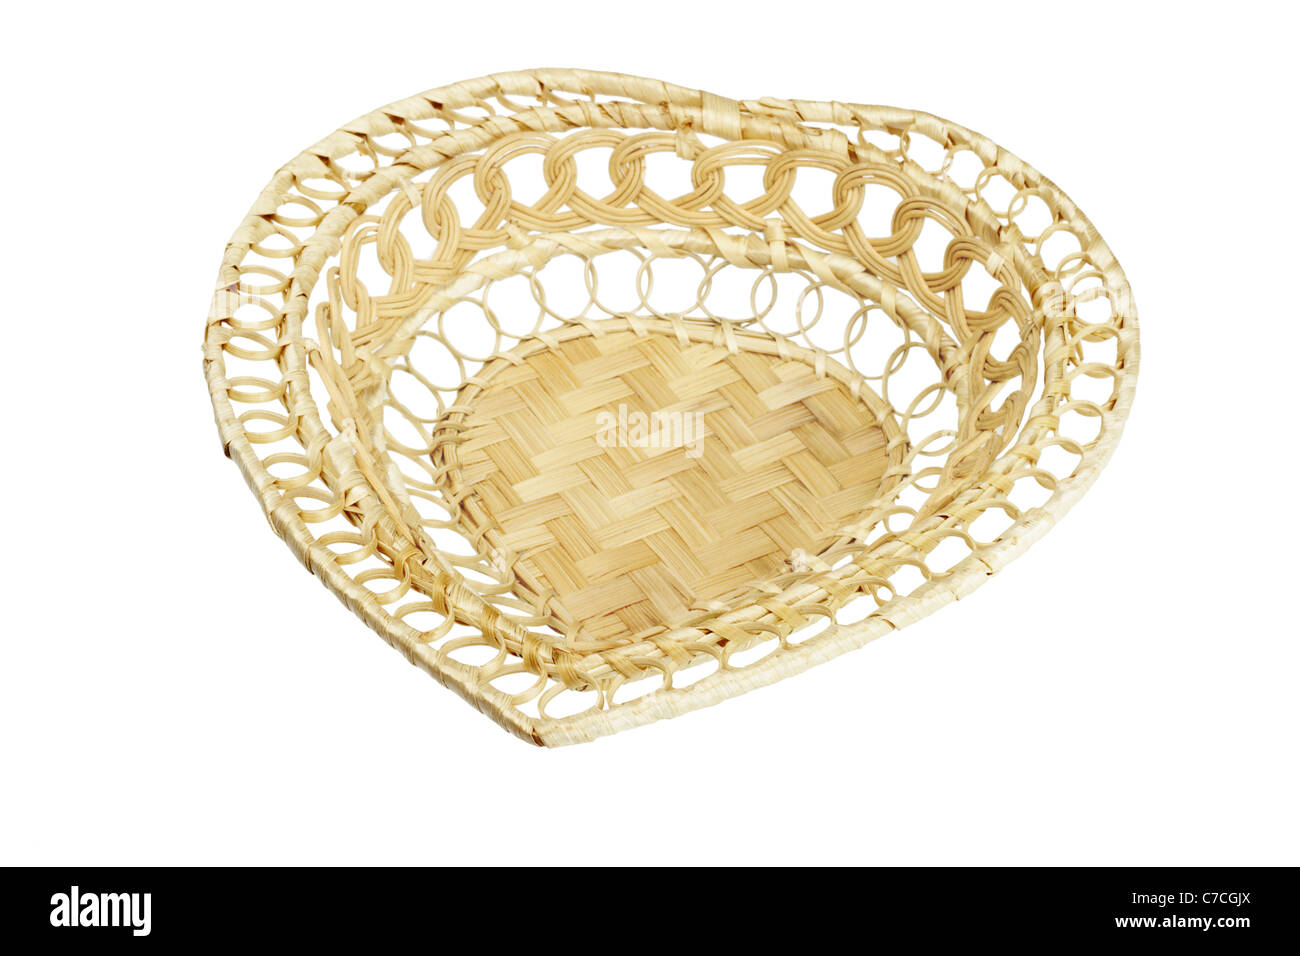 Heart shape gift basket on white background Stock Photo